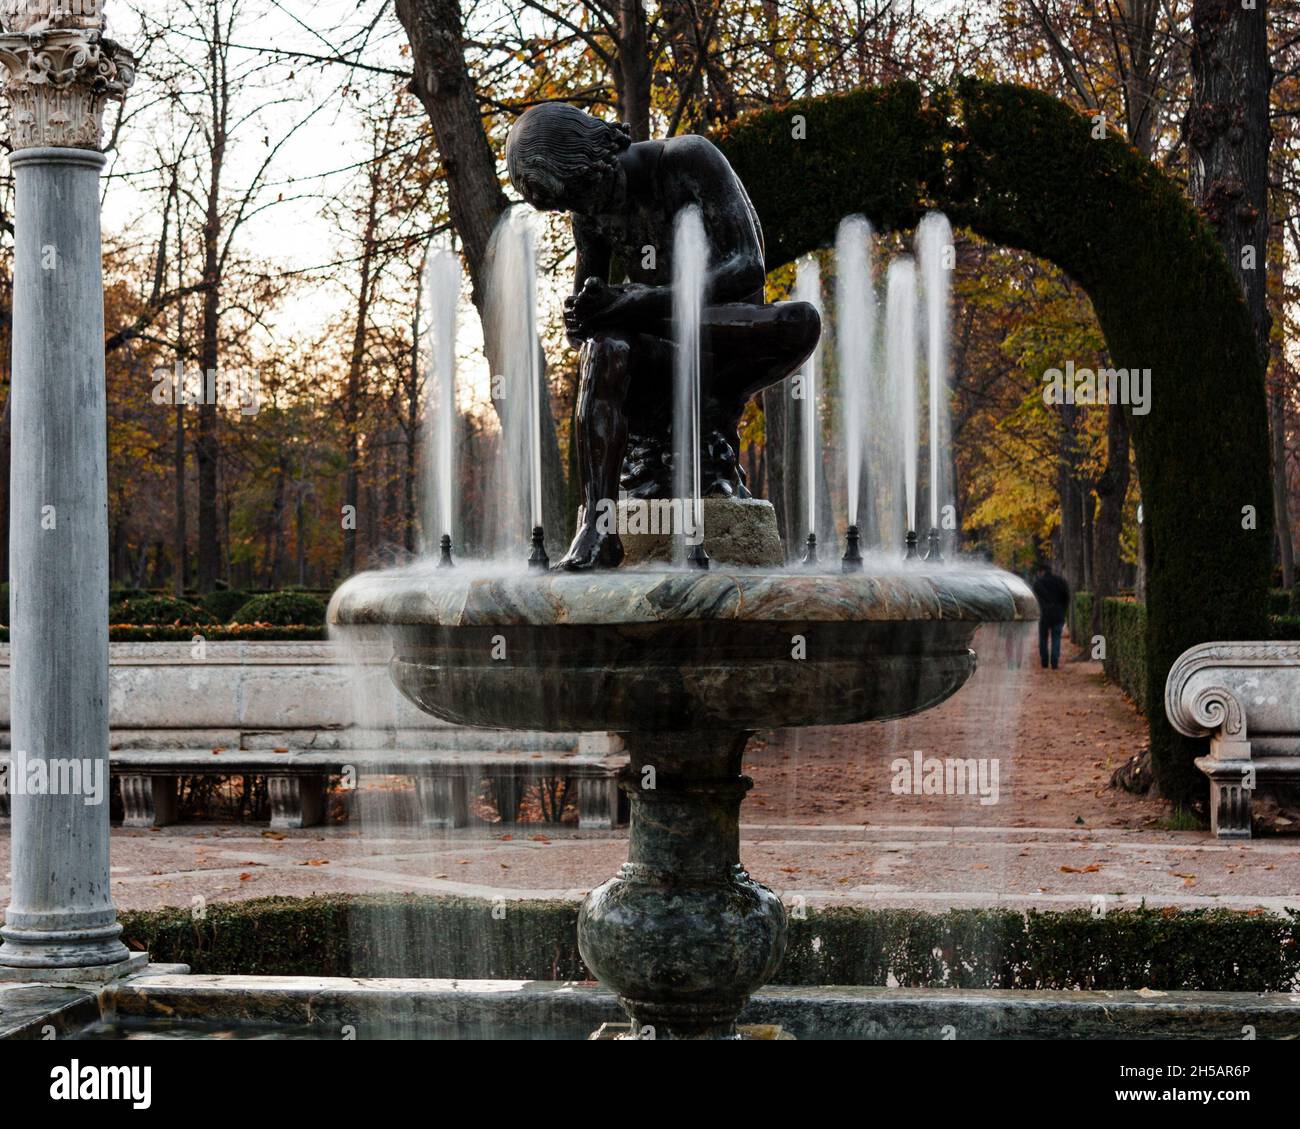 Fontaine avec sculpture d'un garçon touchant son pied située dans un jardin en automne.Format carré.Mise au point sélectionnée. Banque D'Images